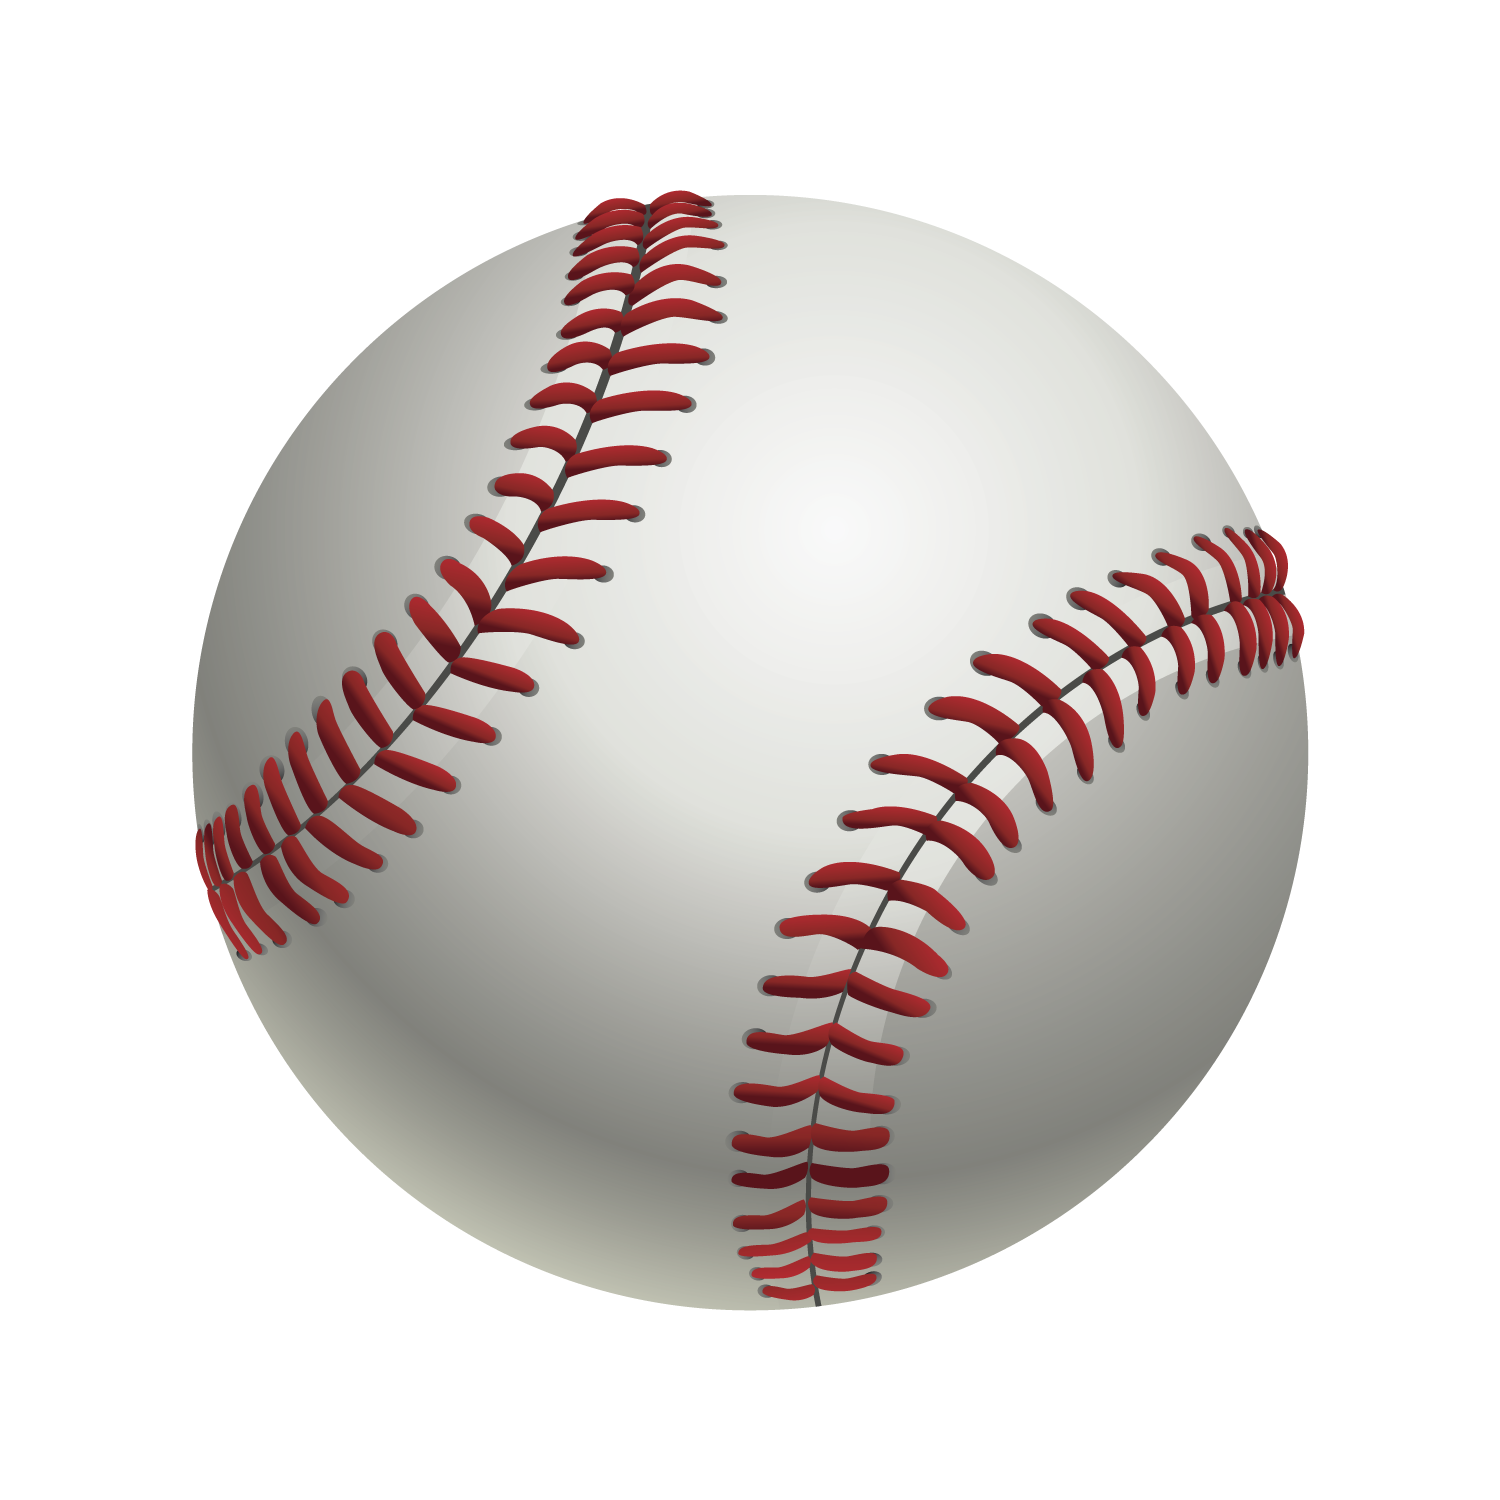 Baseball Batting Clip Art Baseball Ball Png Png Download 1500 1500 Free Transparent Baseball Png Download Clip Art Library